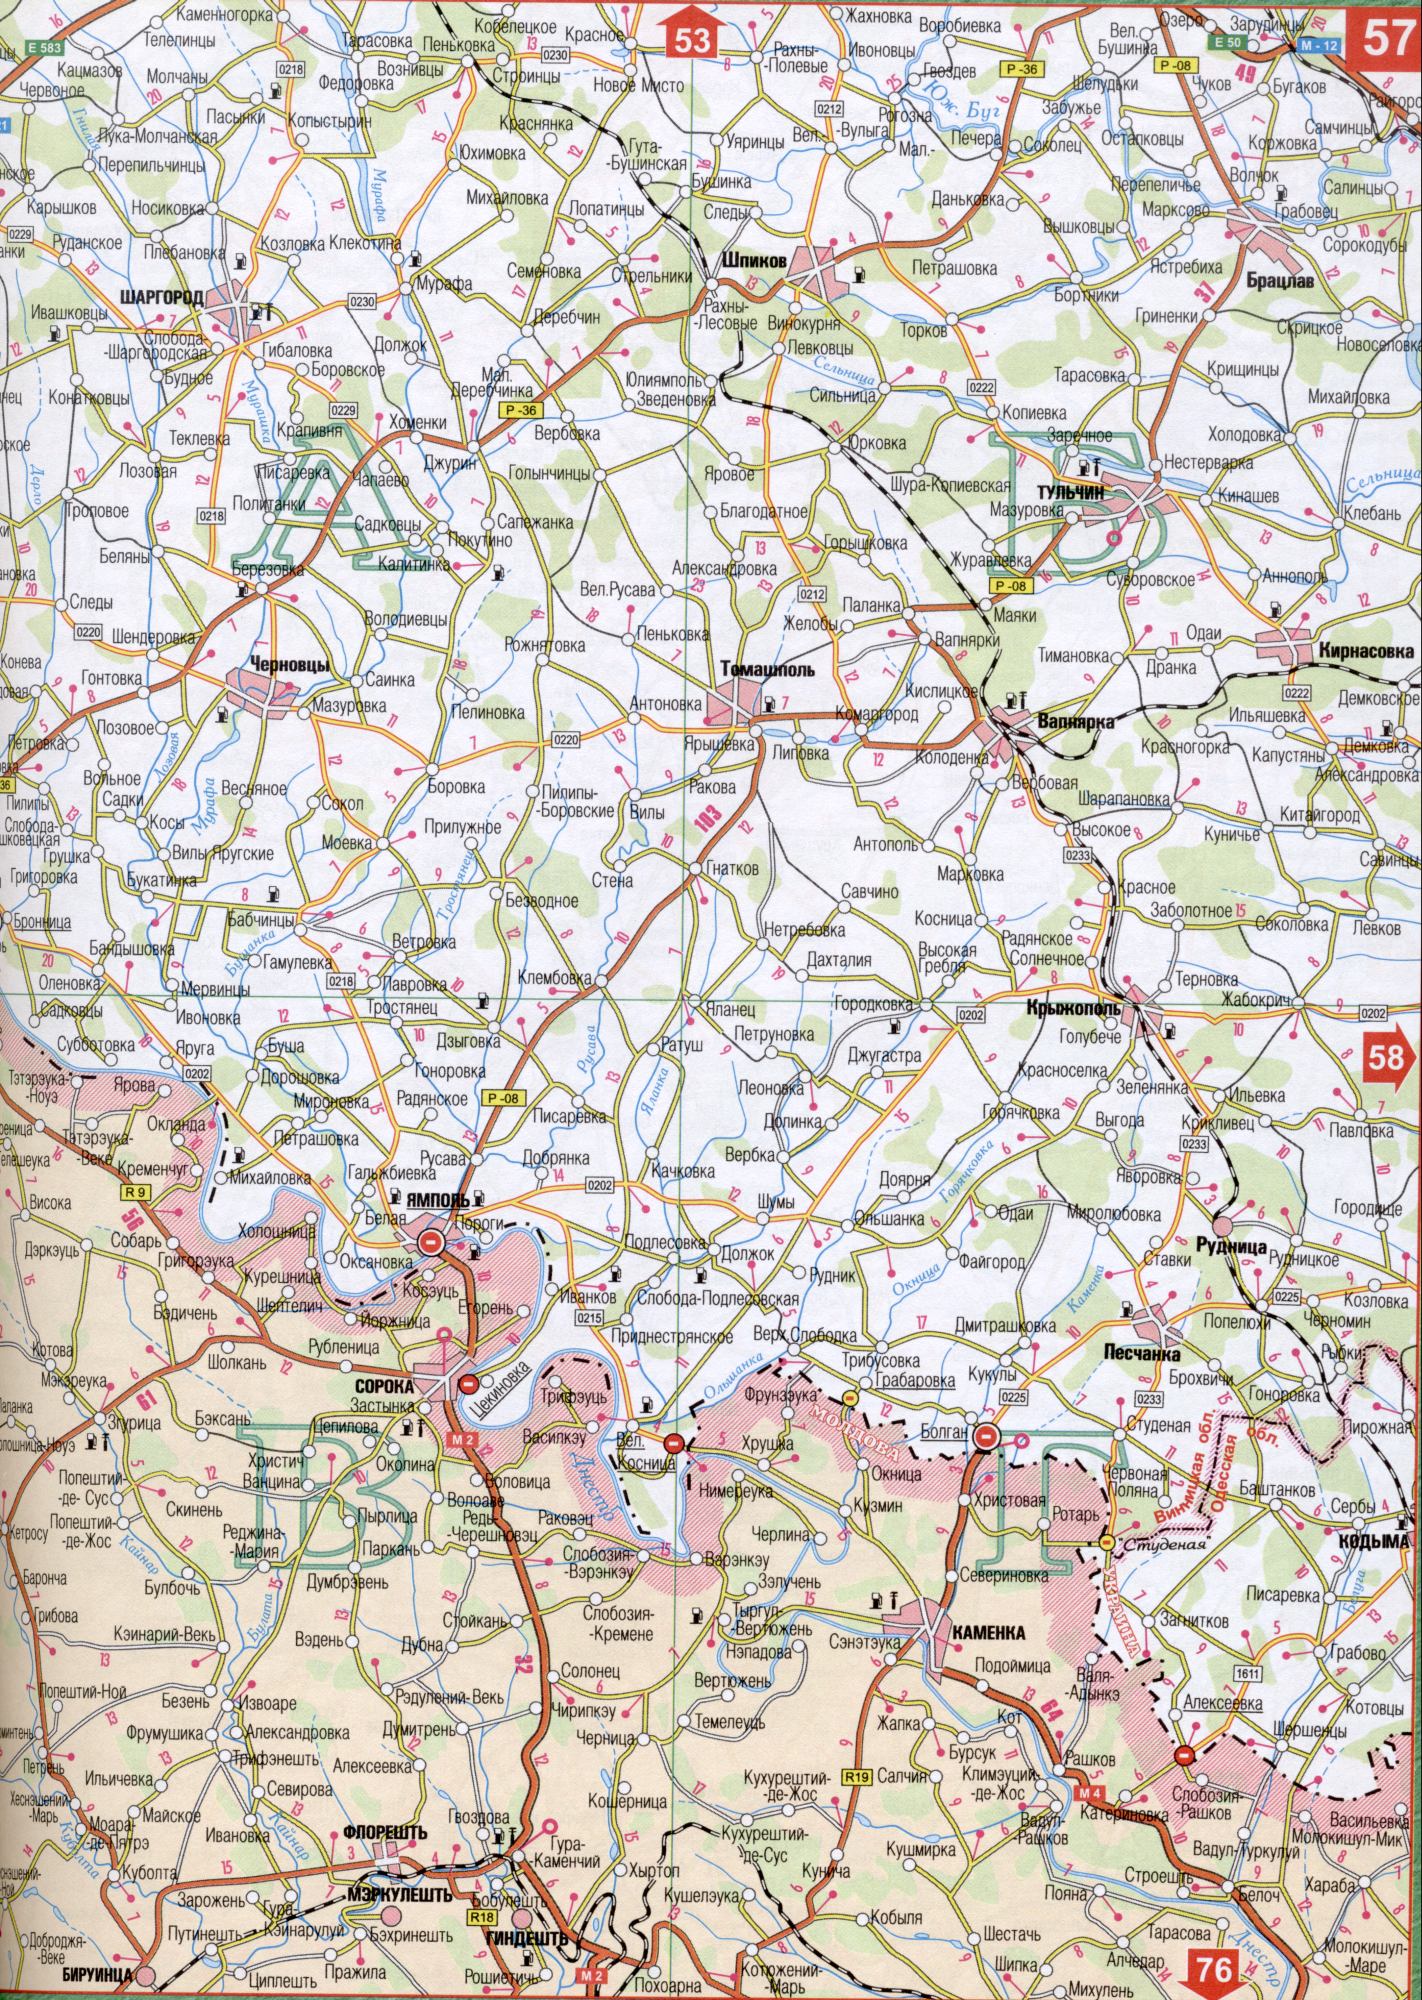 Karte von Winnyzja Region der Ukraine. Eine detaillierte Karte der Maßstab 1cm: 5000m Winnyzja Region. Freie Scharhorod, Pechora, Sokolec, Speck, Lärm, Payback